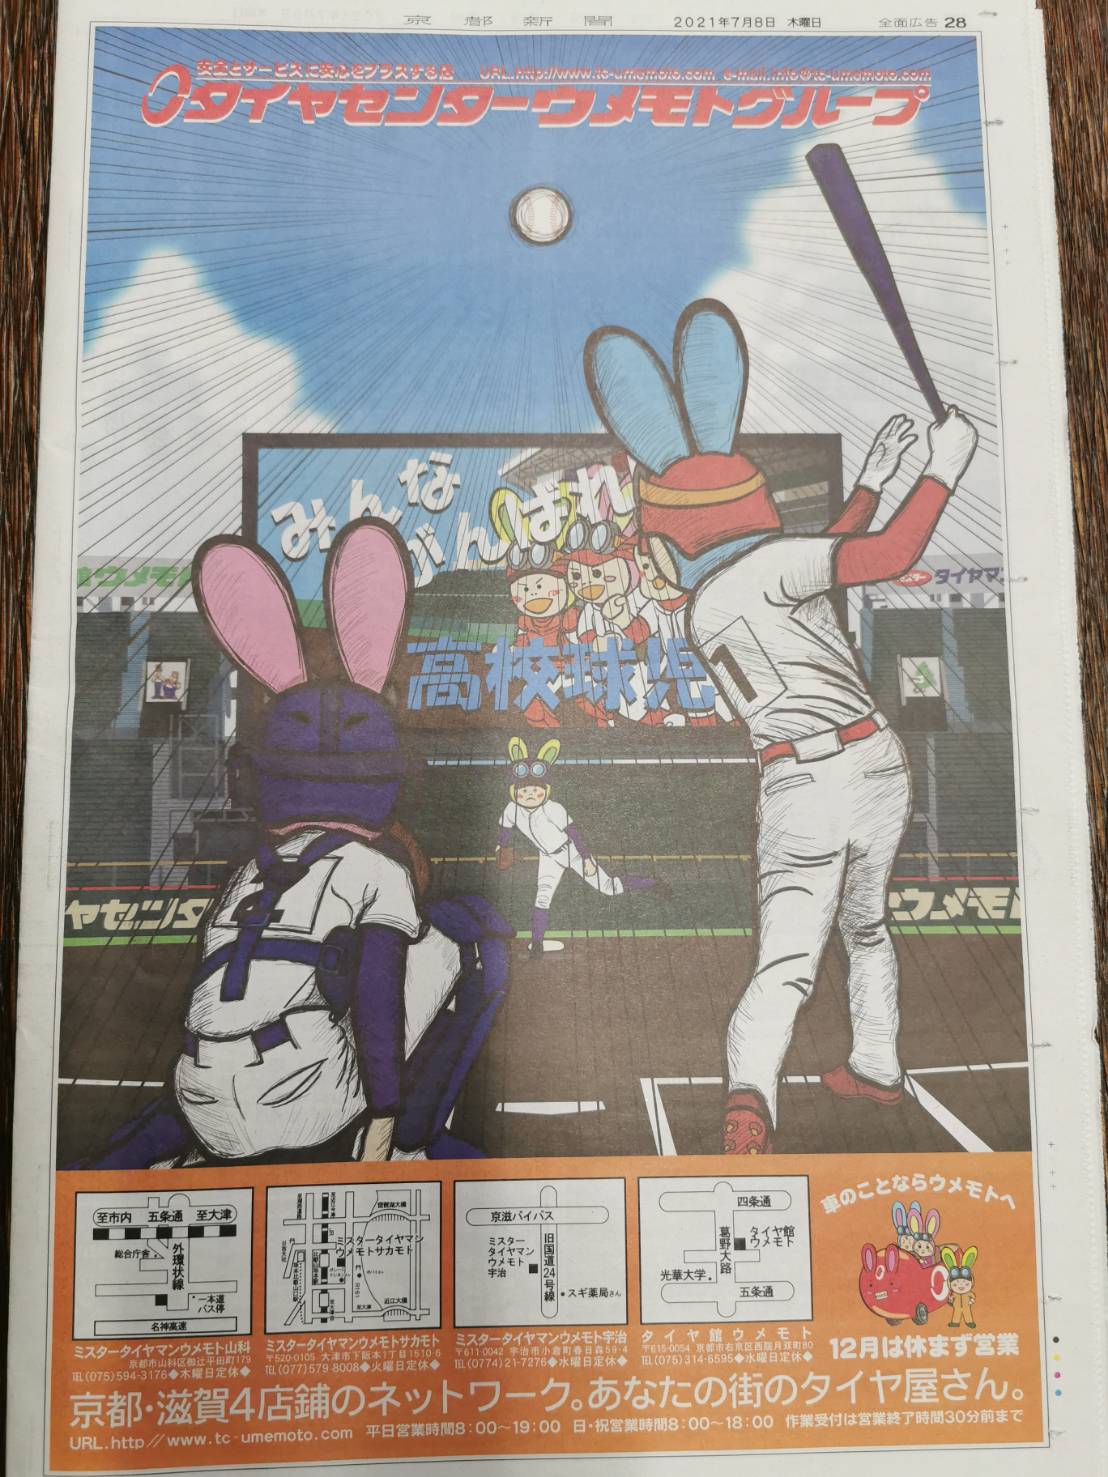 第103回全国高校野球選手権京都大会タブロイド紙全面広告